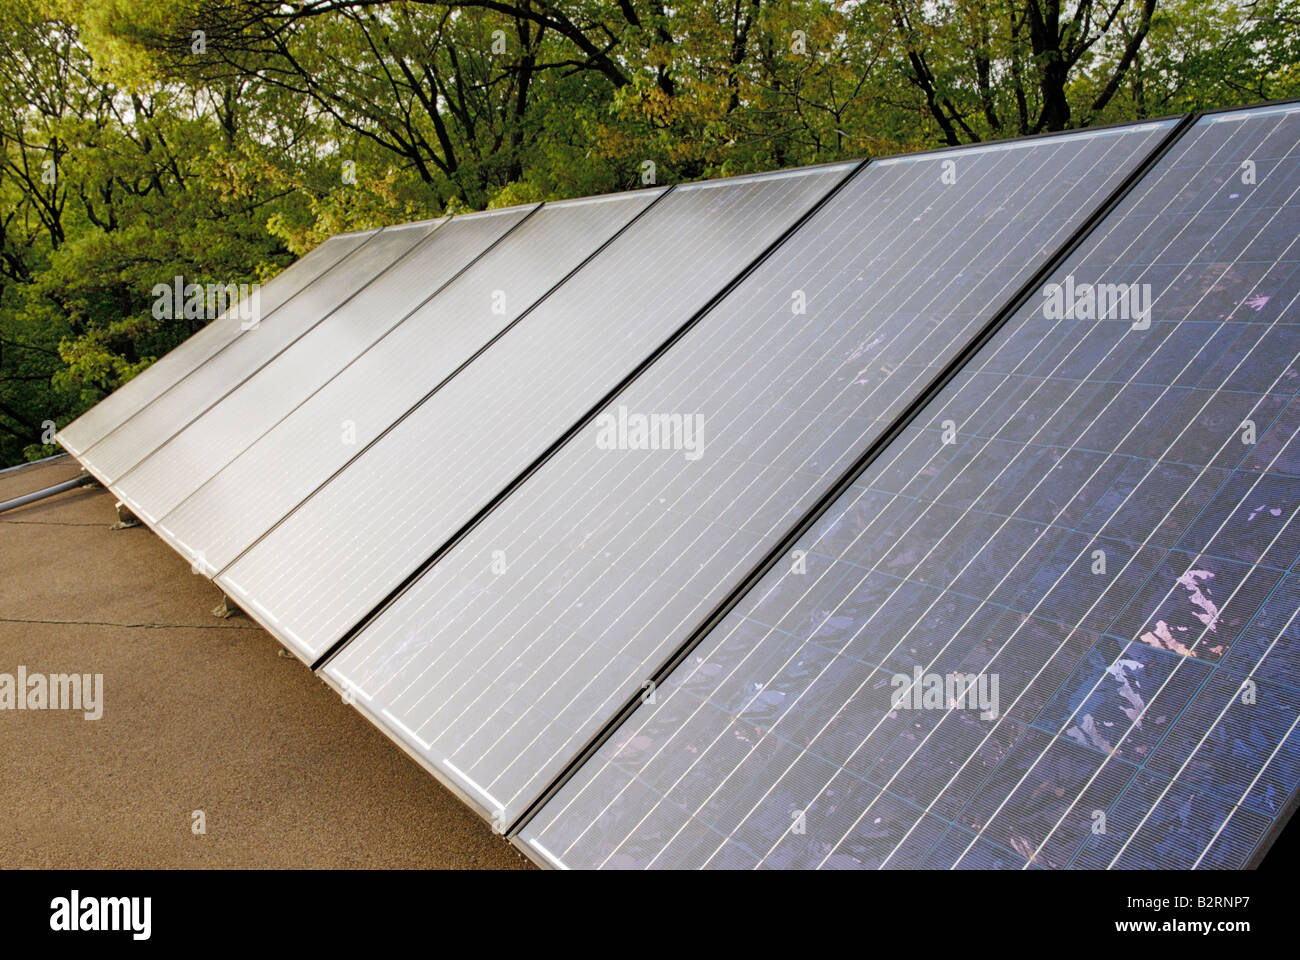 Panneaux d'énergie solaire photovoltaïque sur le toit d'une maison Banque D'Images